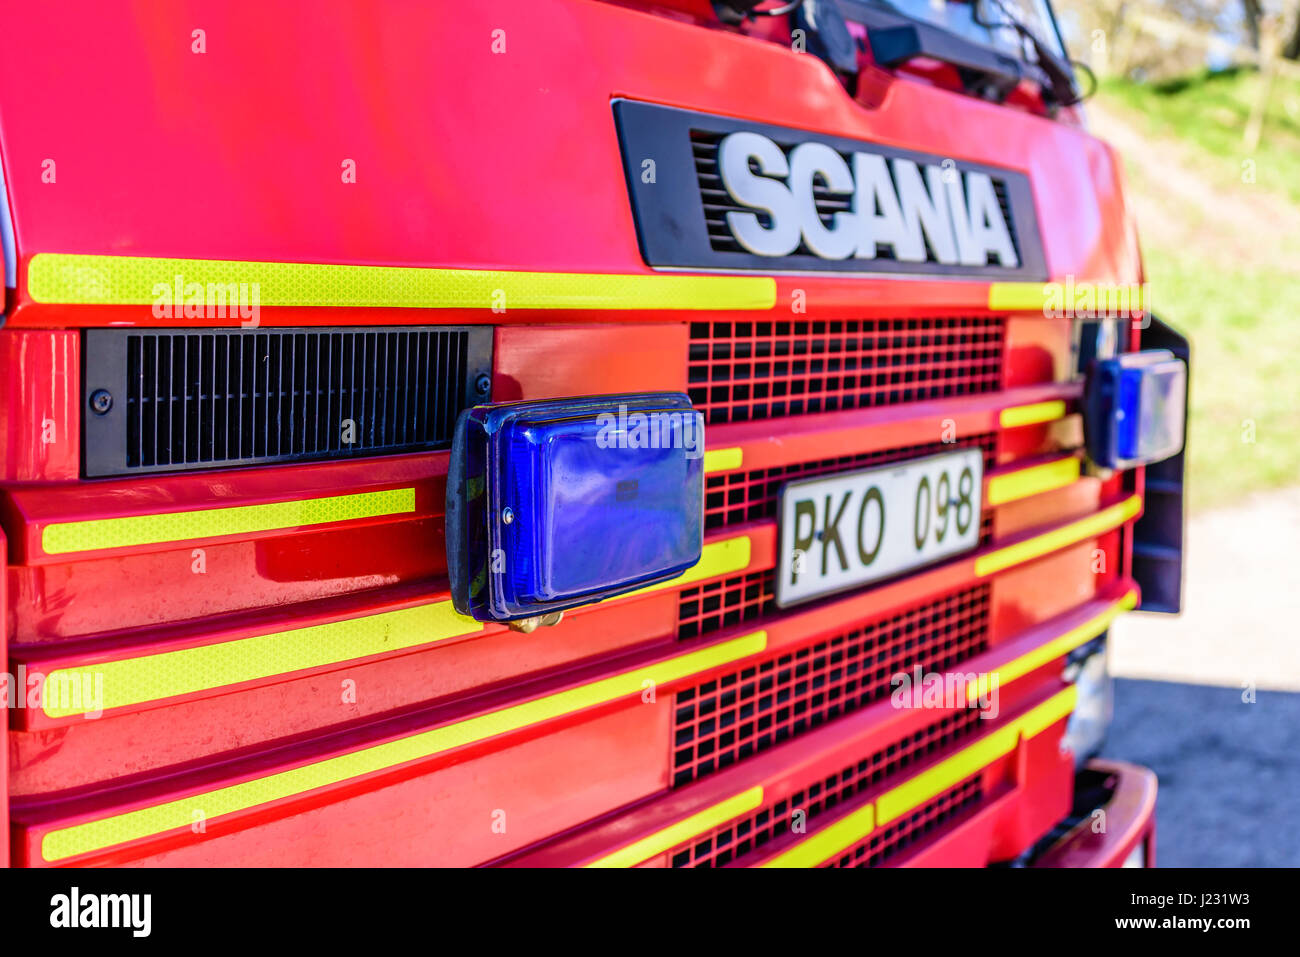 Brakne Hoby, Suecia - 22 de abril de 2017: Documental de camión de bomberos presentación pública. Luces de emergencia de color azul en la parte delantera del camión de bomberos de Scania. Foto de stock